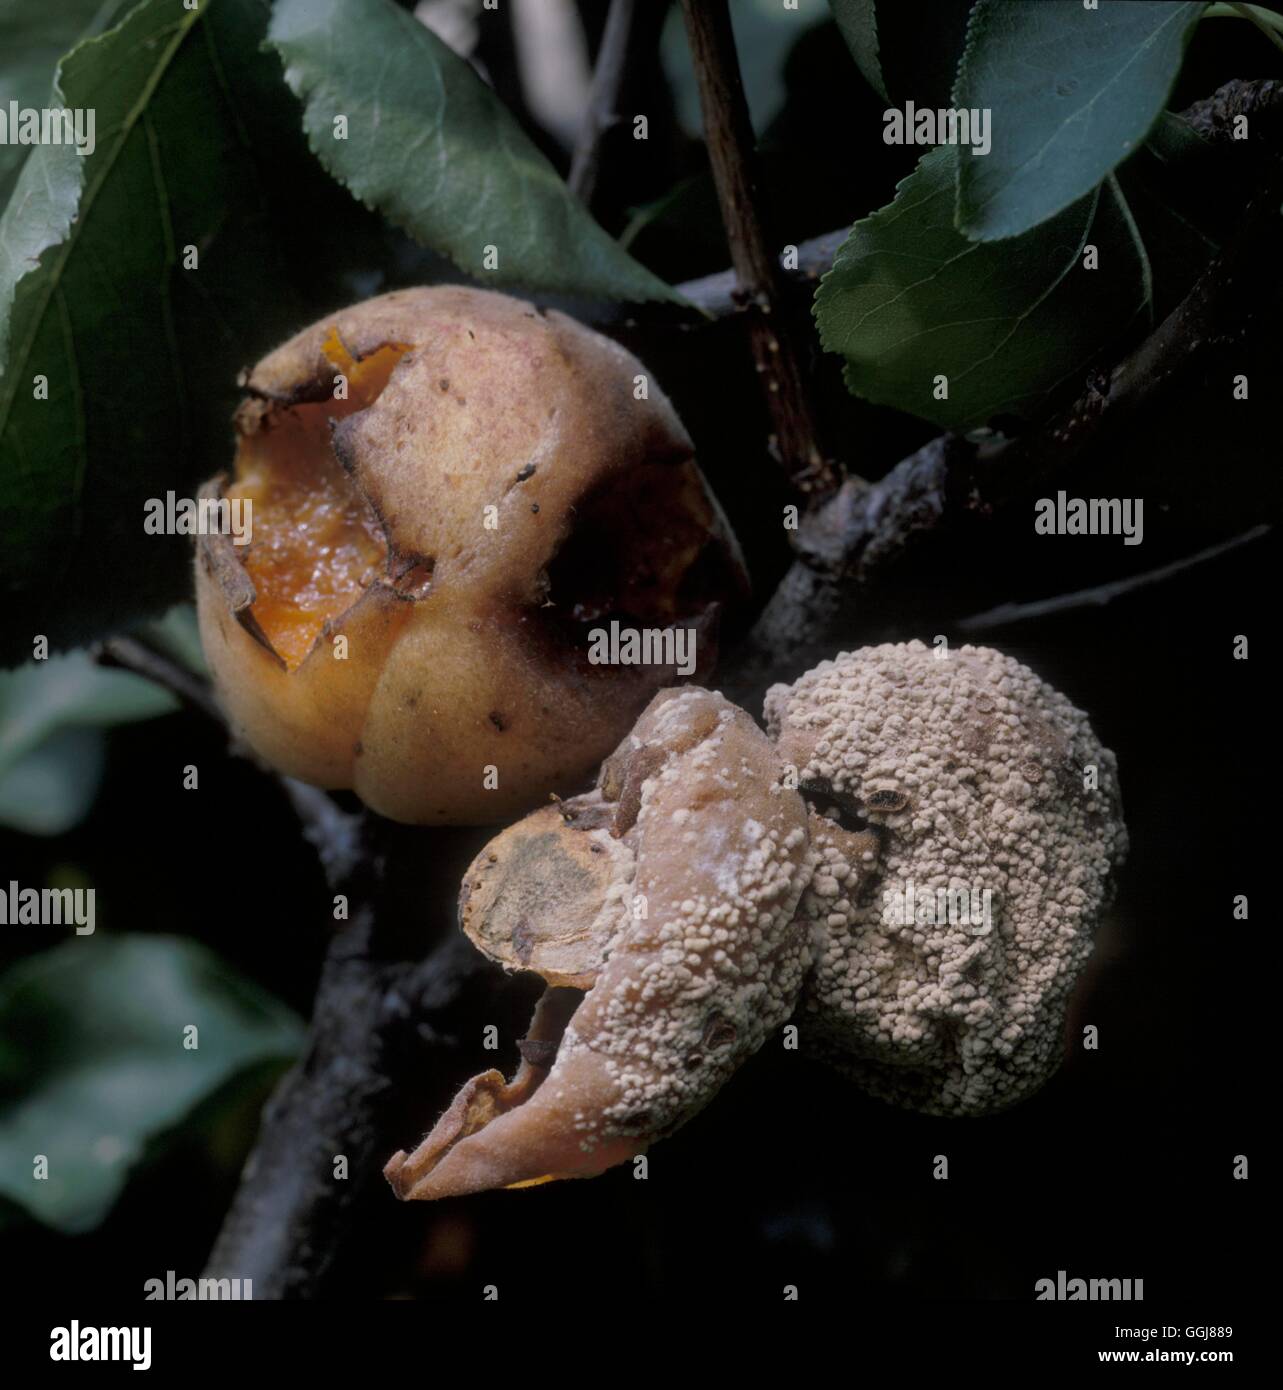 Marciume bruno per le albicocche (Sclerotinia fructigena) Data: 4.07.08 DIS067302 Foto di Orticoltura/Pho Foto Stock